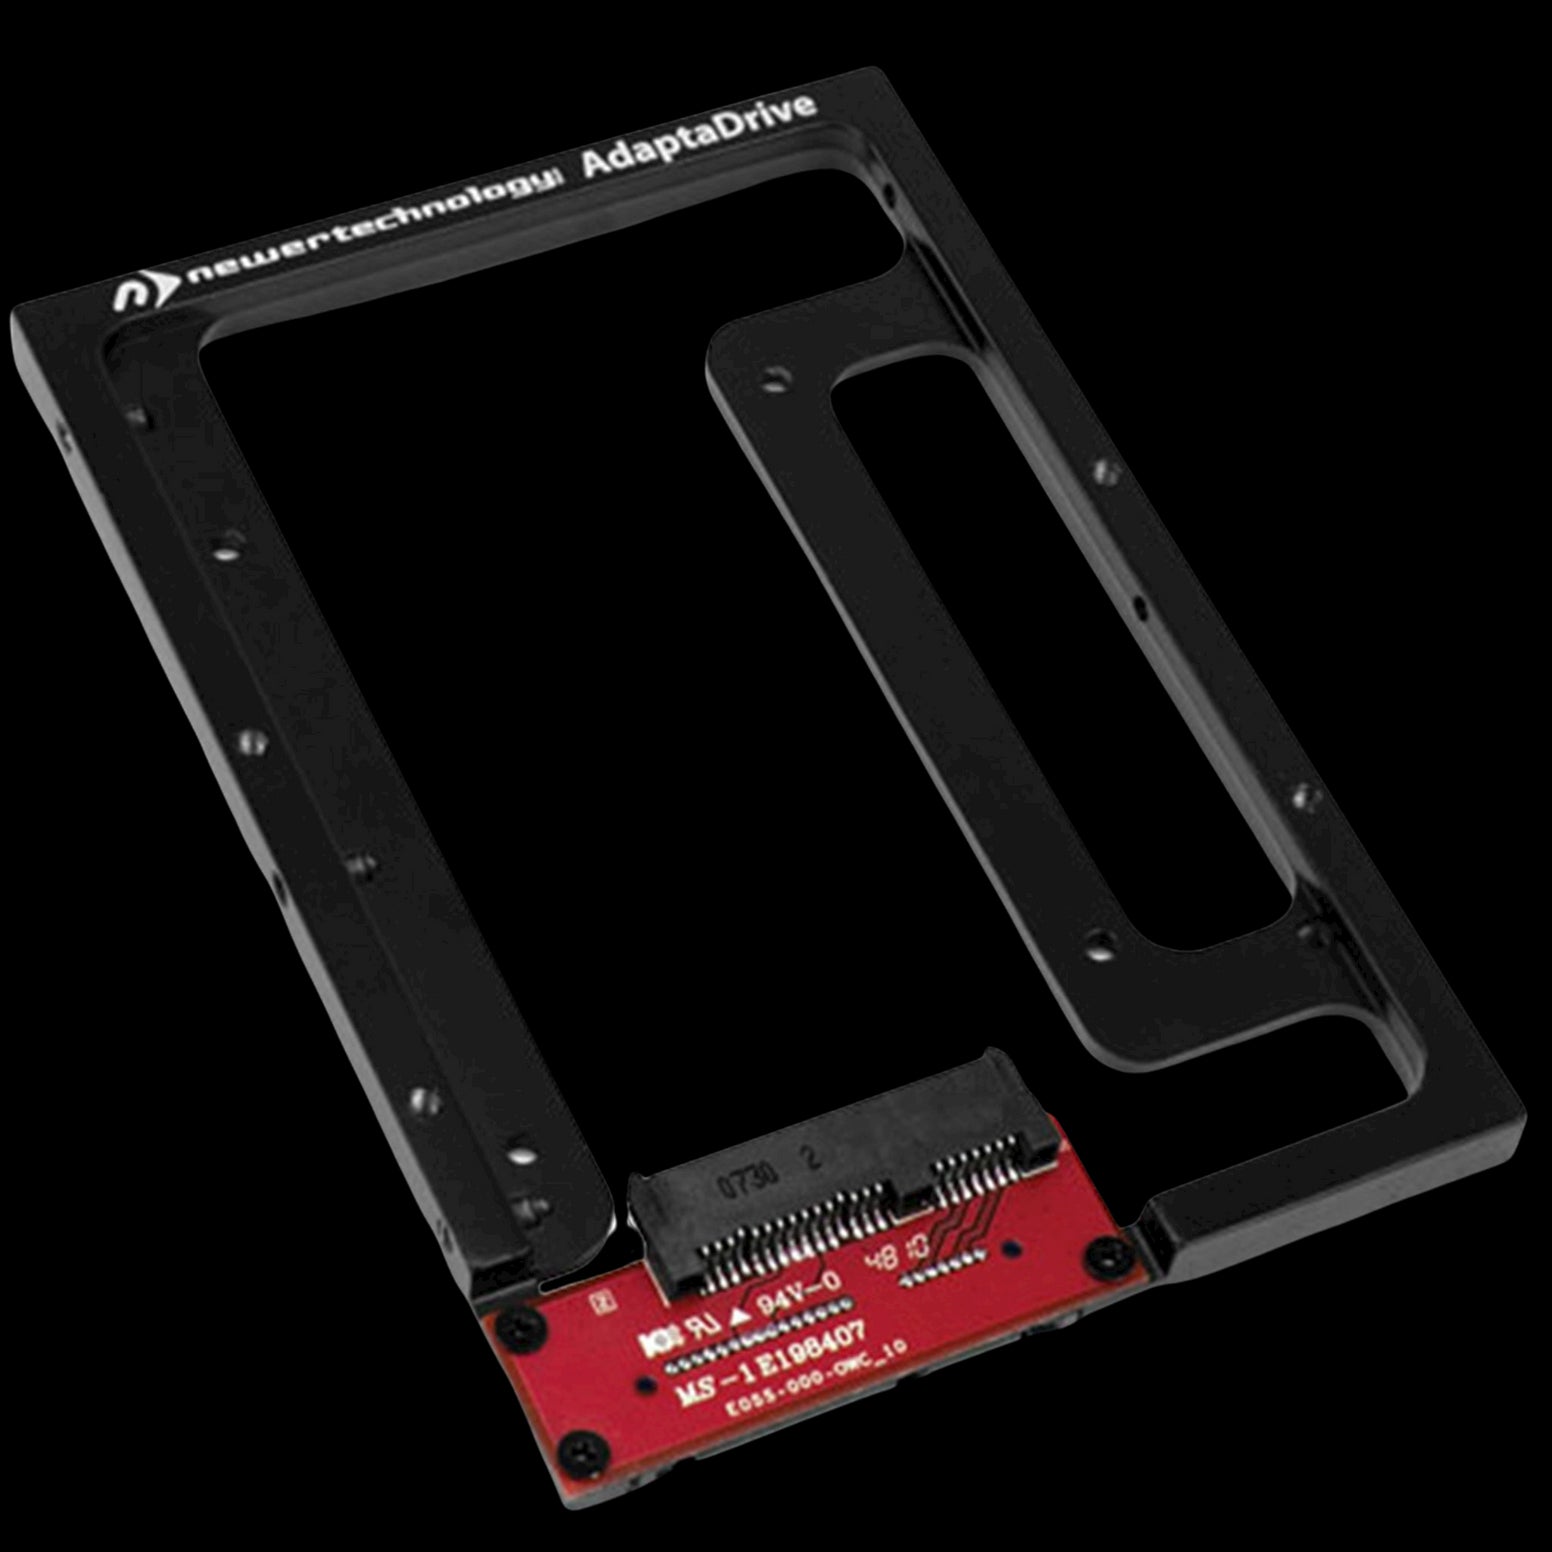 OWC 1TB Mercury Electra 2.5" SSD & NewerTech AdaptaDrive 3.5” Drive Bay Adapter Bundle Kit